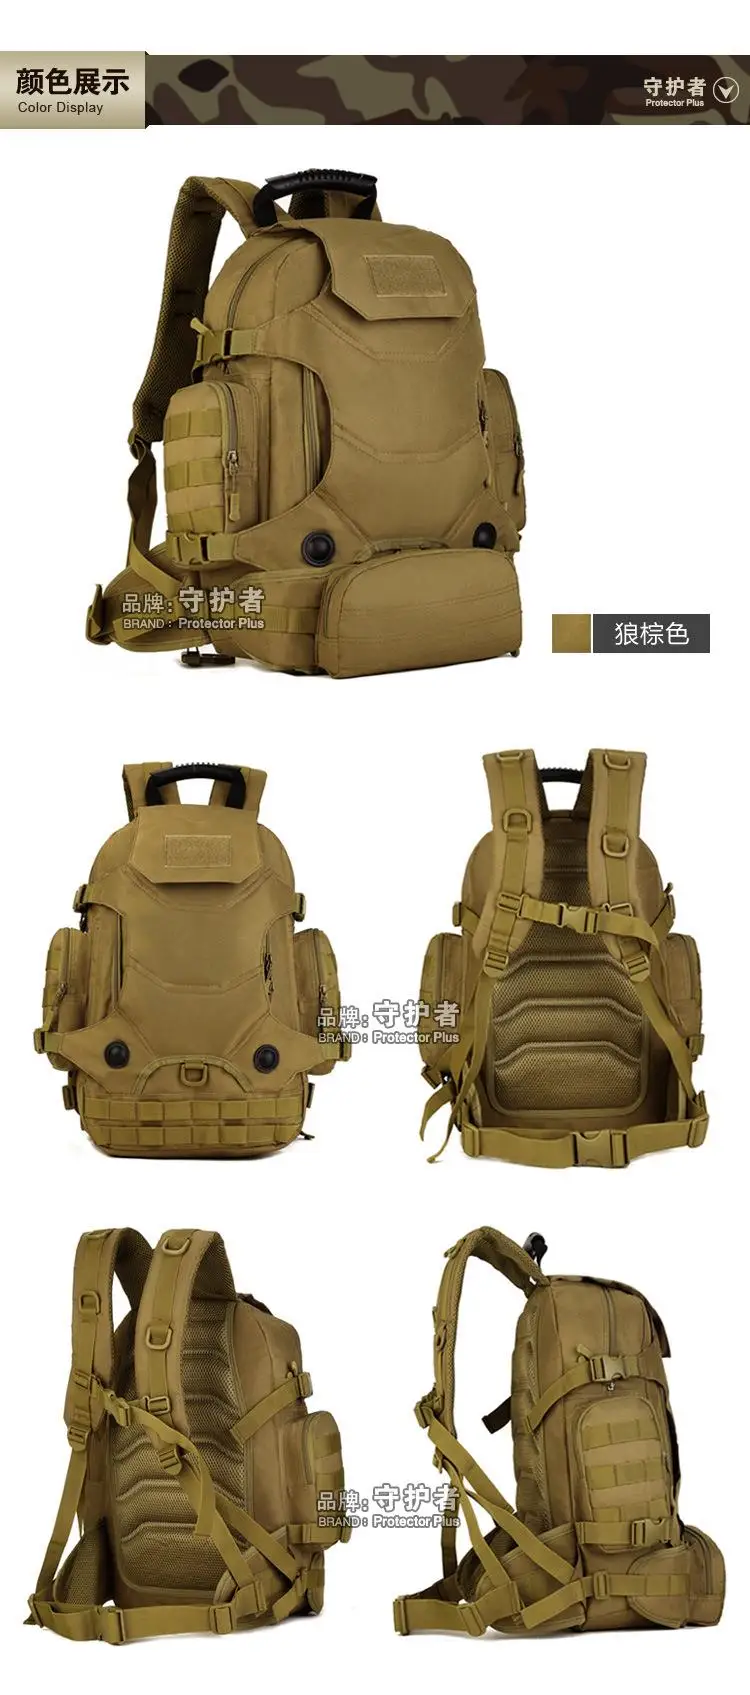 40L Многофункциональный Рюкзак Molle, уличный рюкзак, сумка на плечо, военная тактика, яркий цвет, для альпинизма A3178